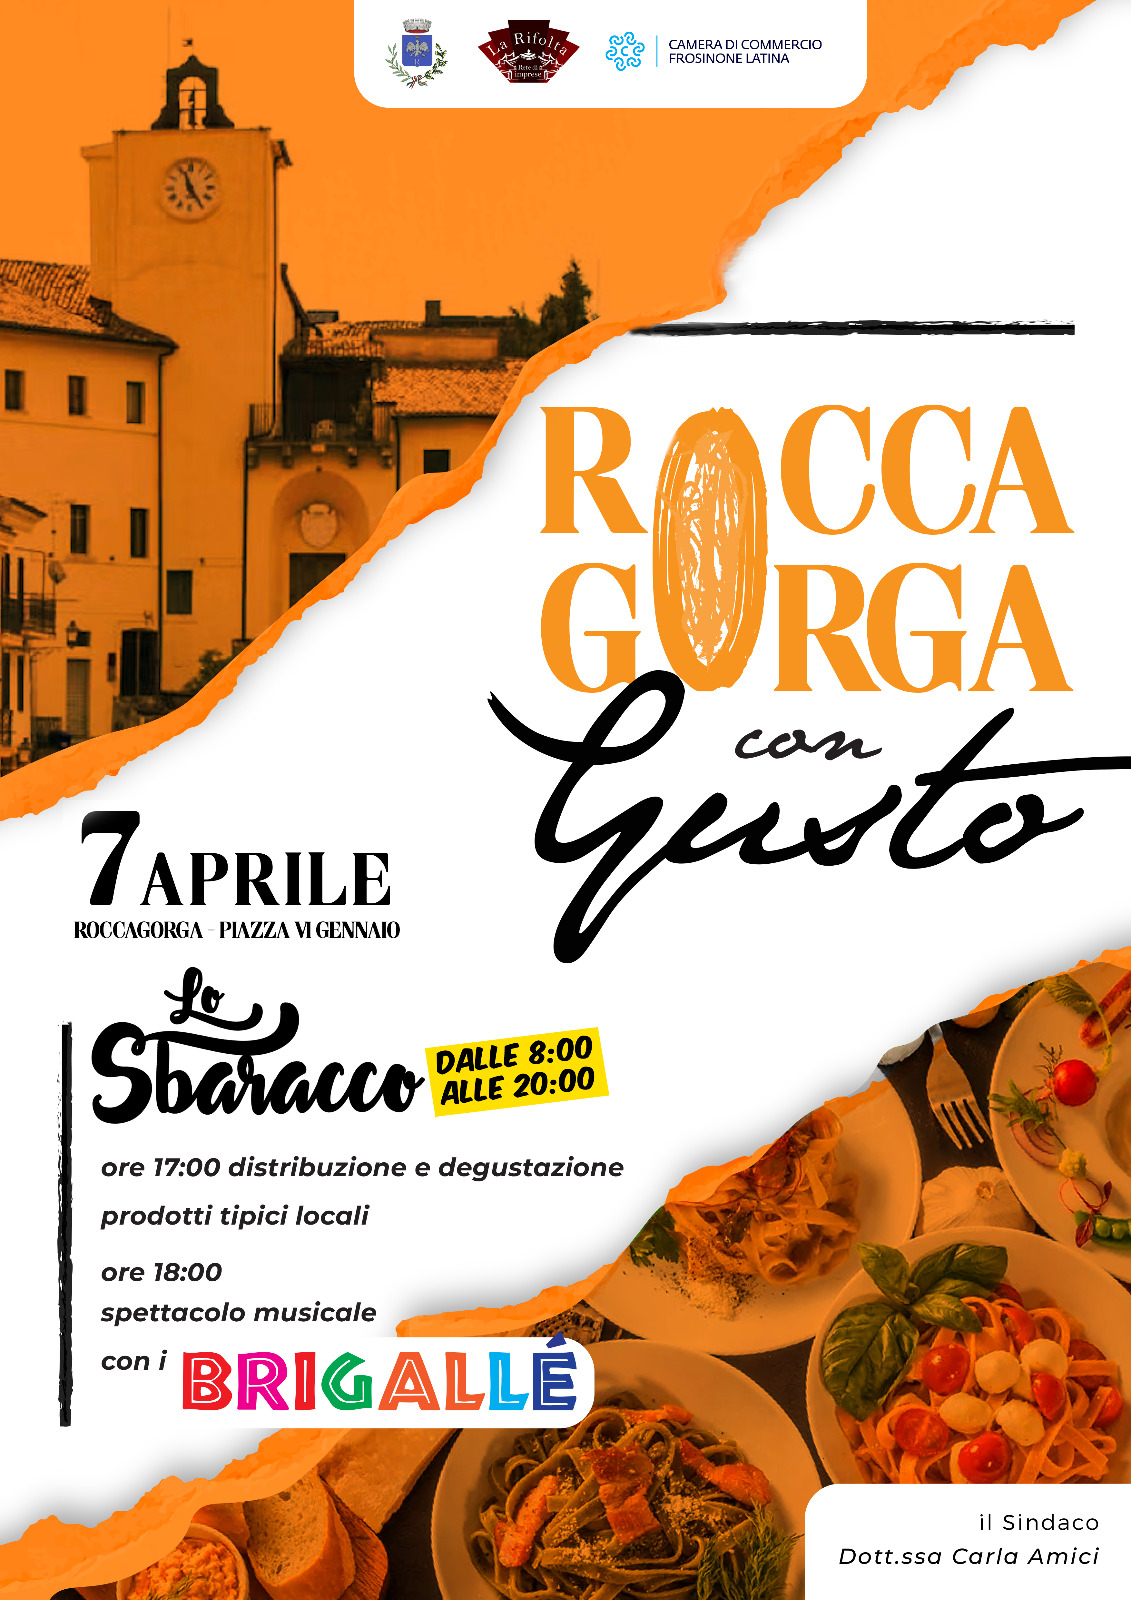 Comune di Roccagorga: Roccagorga con gusto @ Comune di Roccagorga